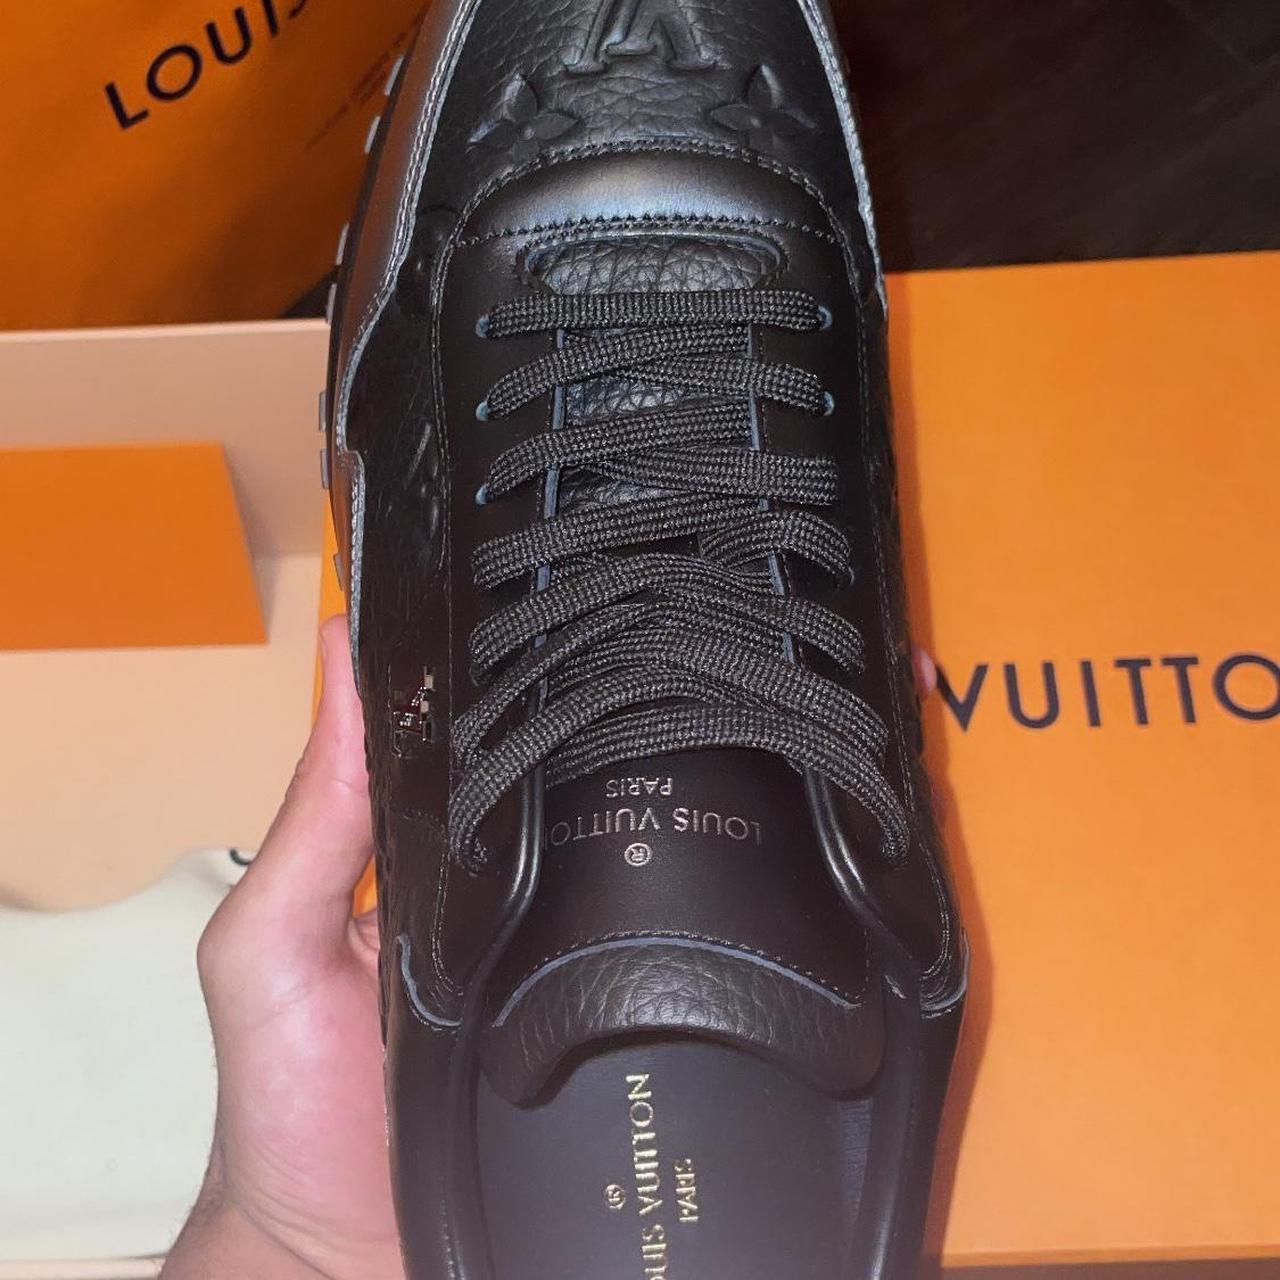 Louis Vuitton shoes - Depop